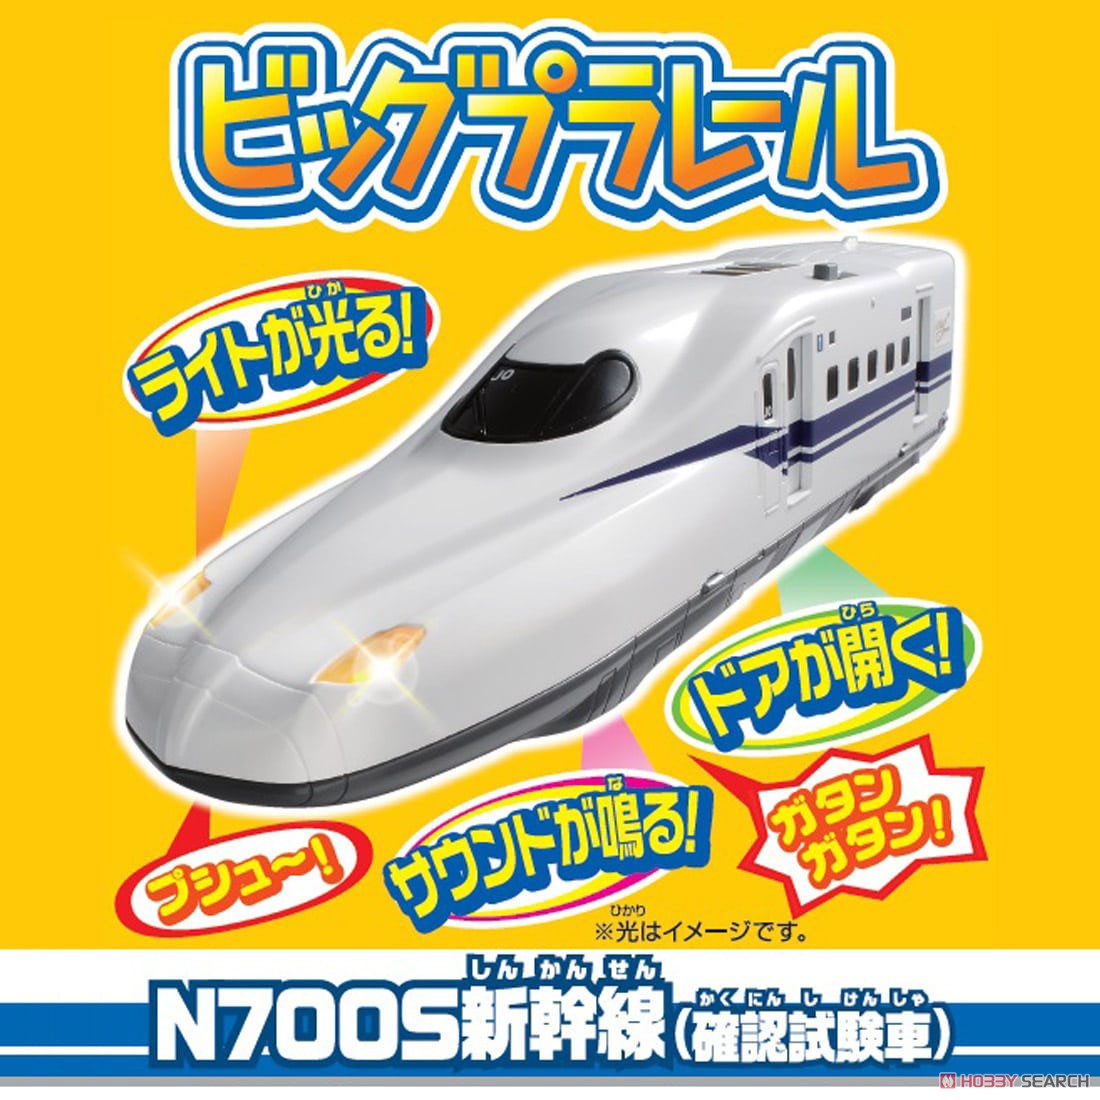 ビッグプラレール N700S新幹線(確認試験車) (プラレール) その他の画像1